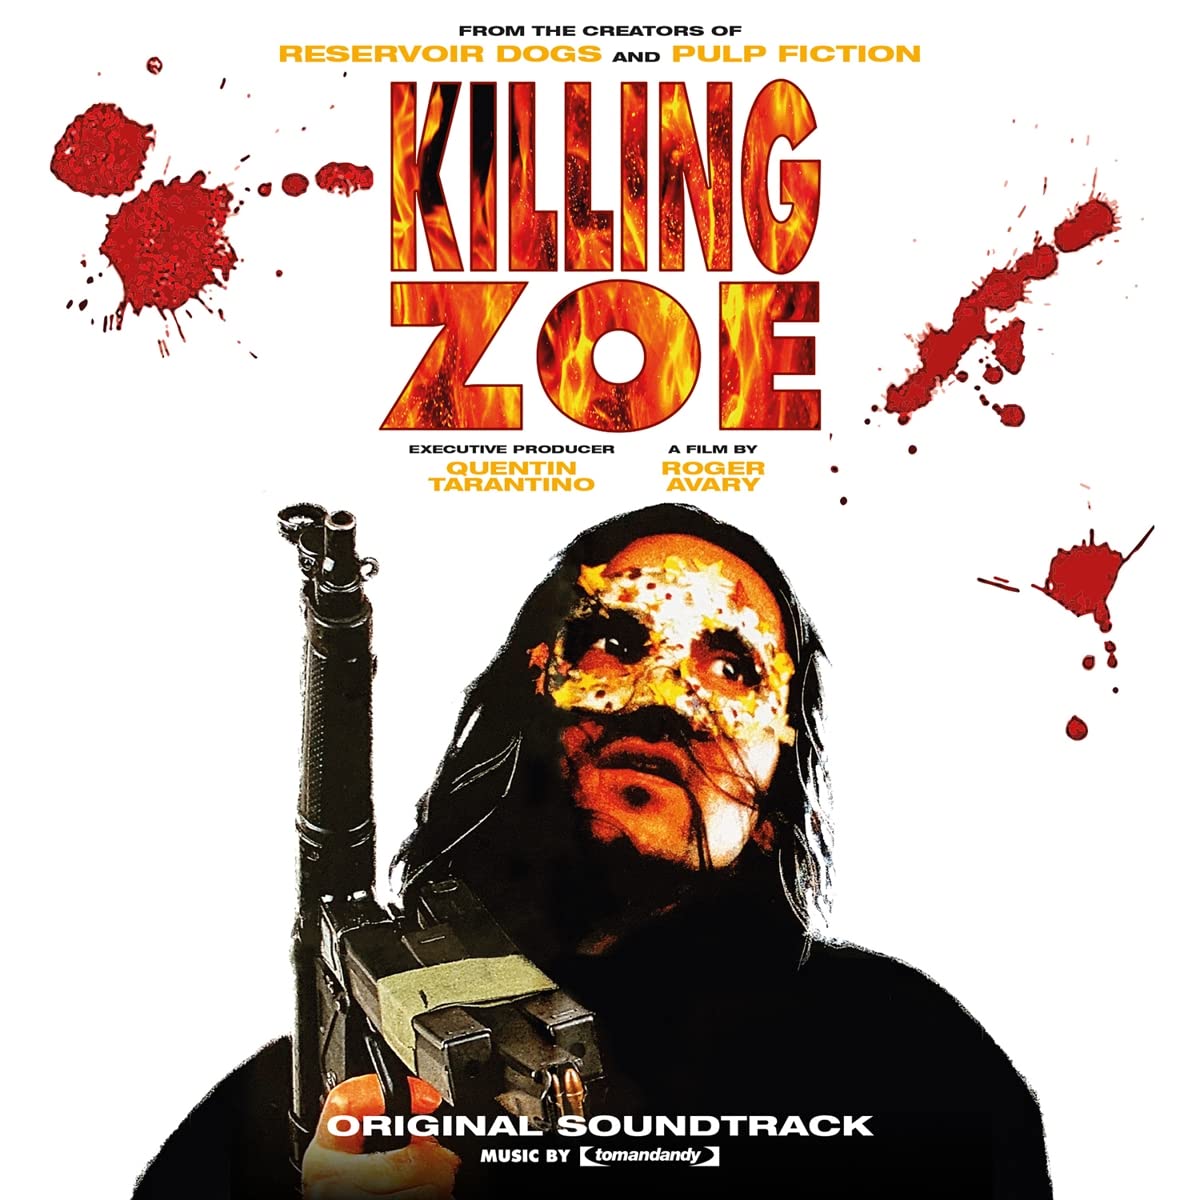 Vinile Tomandandy - Killing Zoe (Original Soundtrack) (Orange & Red Marble) NUOVO SIGILLATO, EDIZIONE DEL 13/10/2022 SUBITO DISPONIBILE